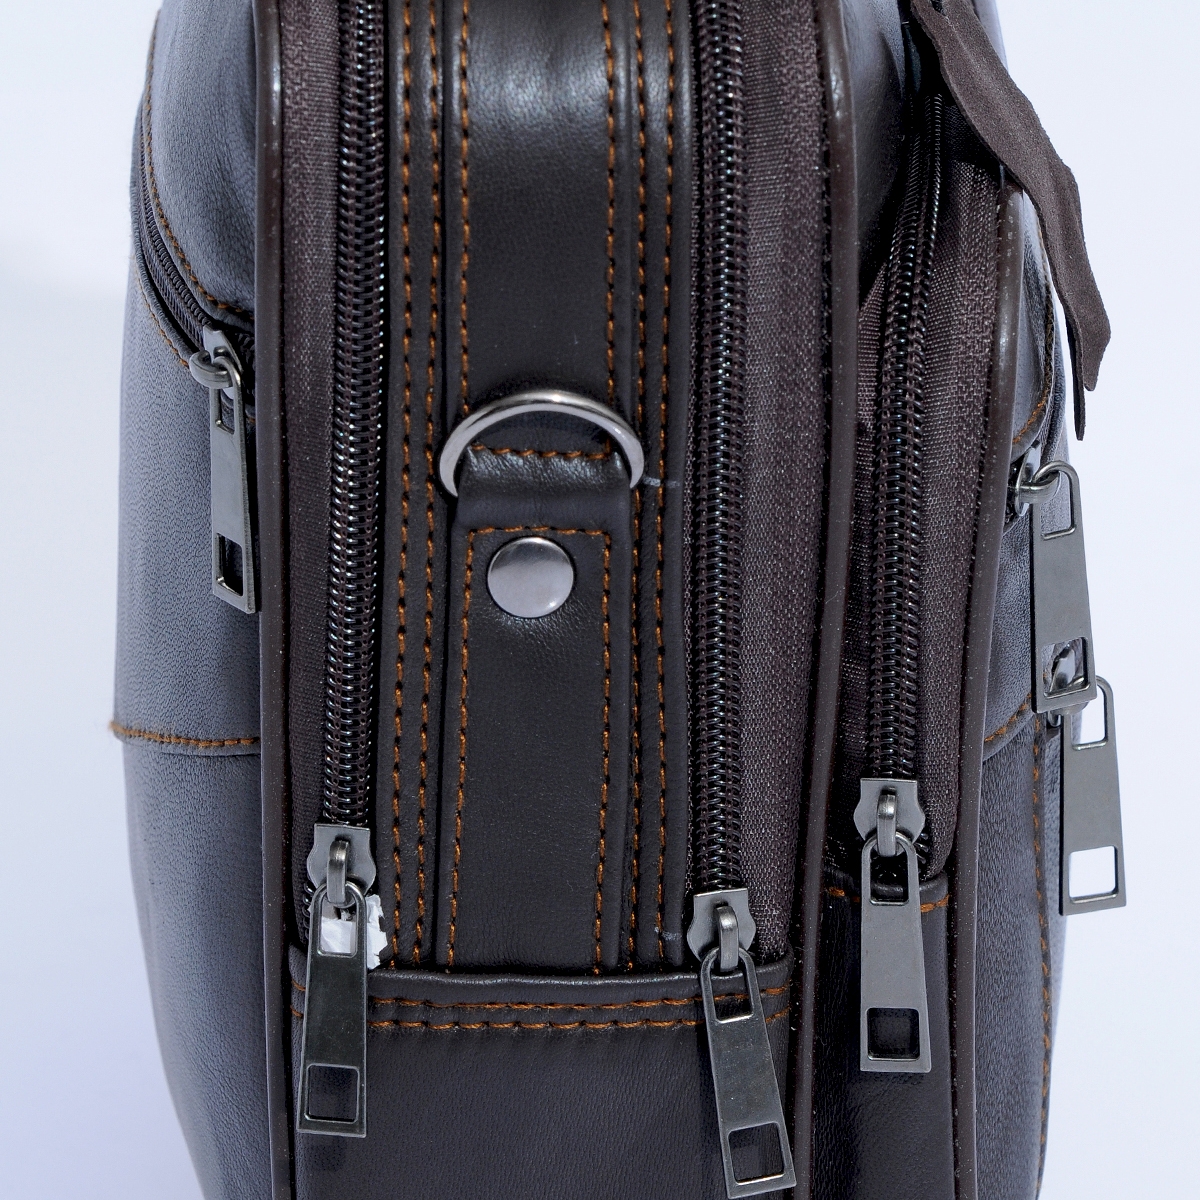 Flo nw-3009 büyük boy hakiki deri kasalı erkek el ve omuz çantası KAHVE. 4